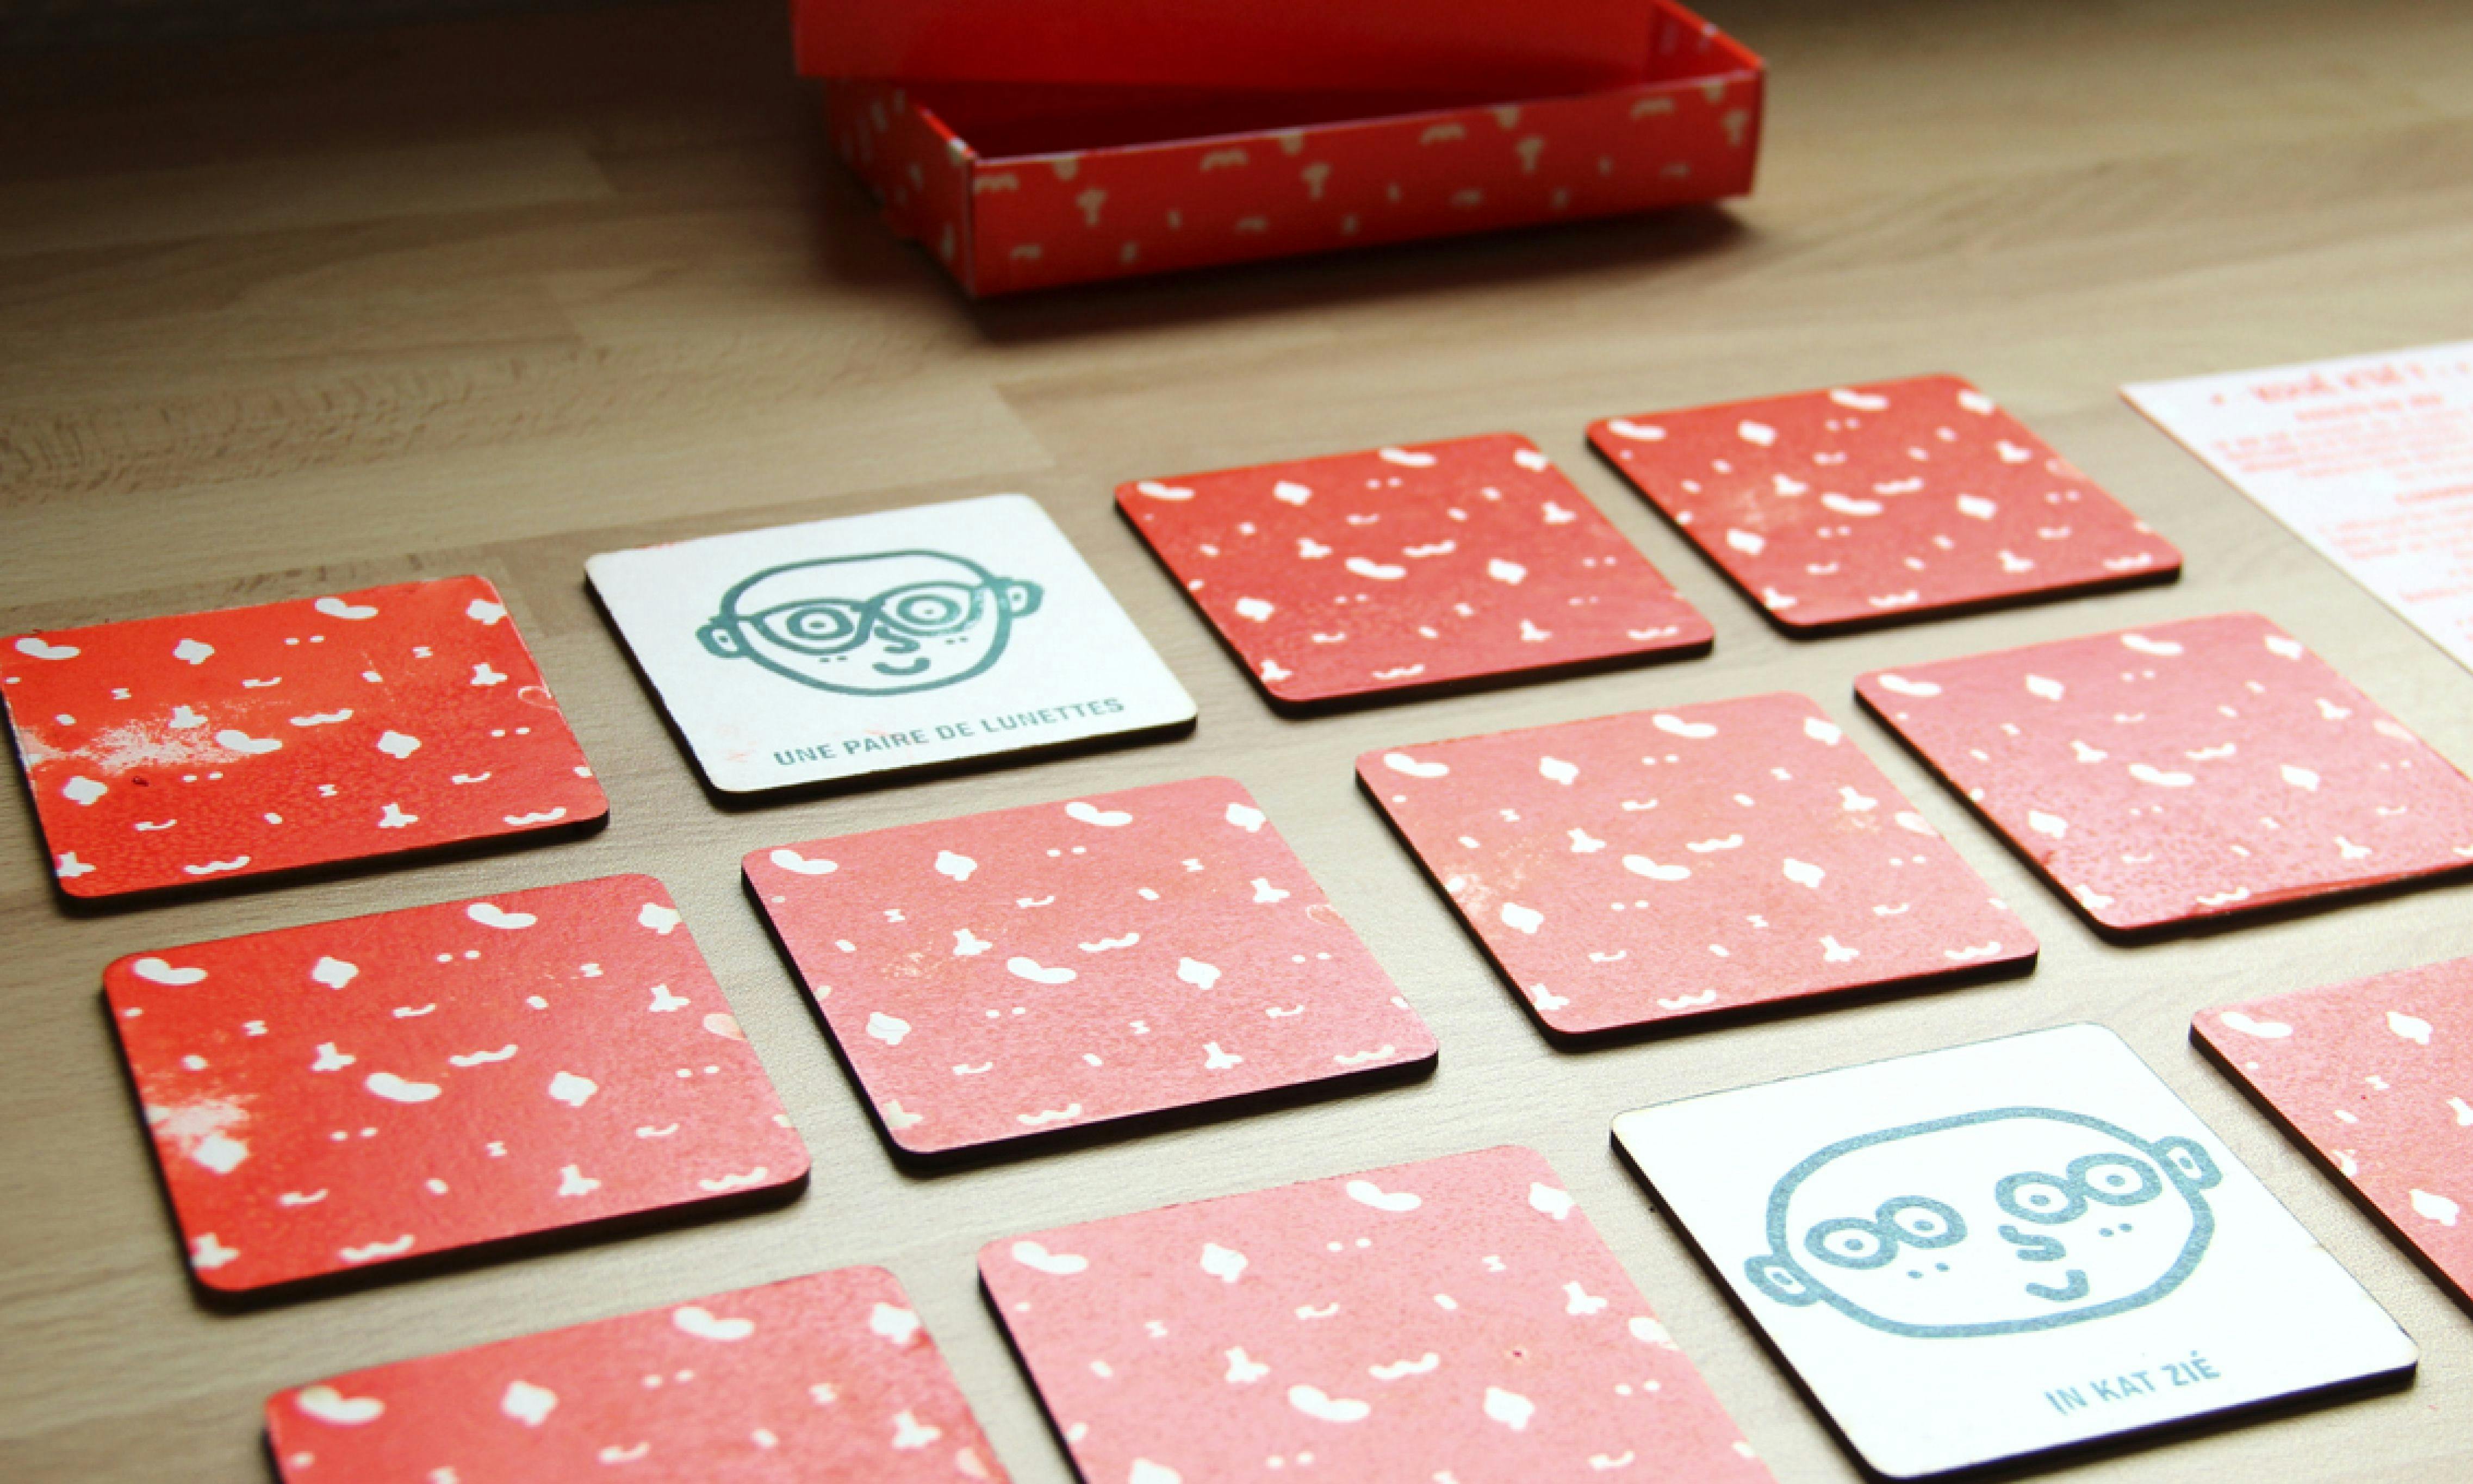 printed cards on floor